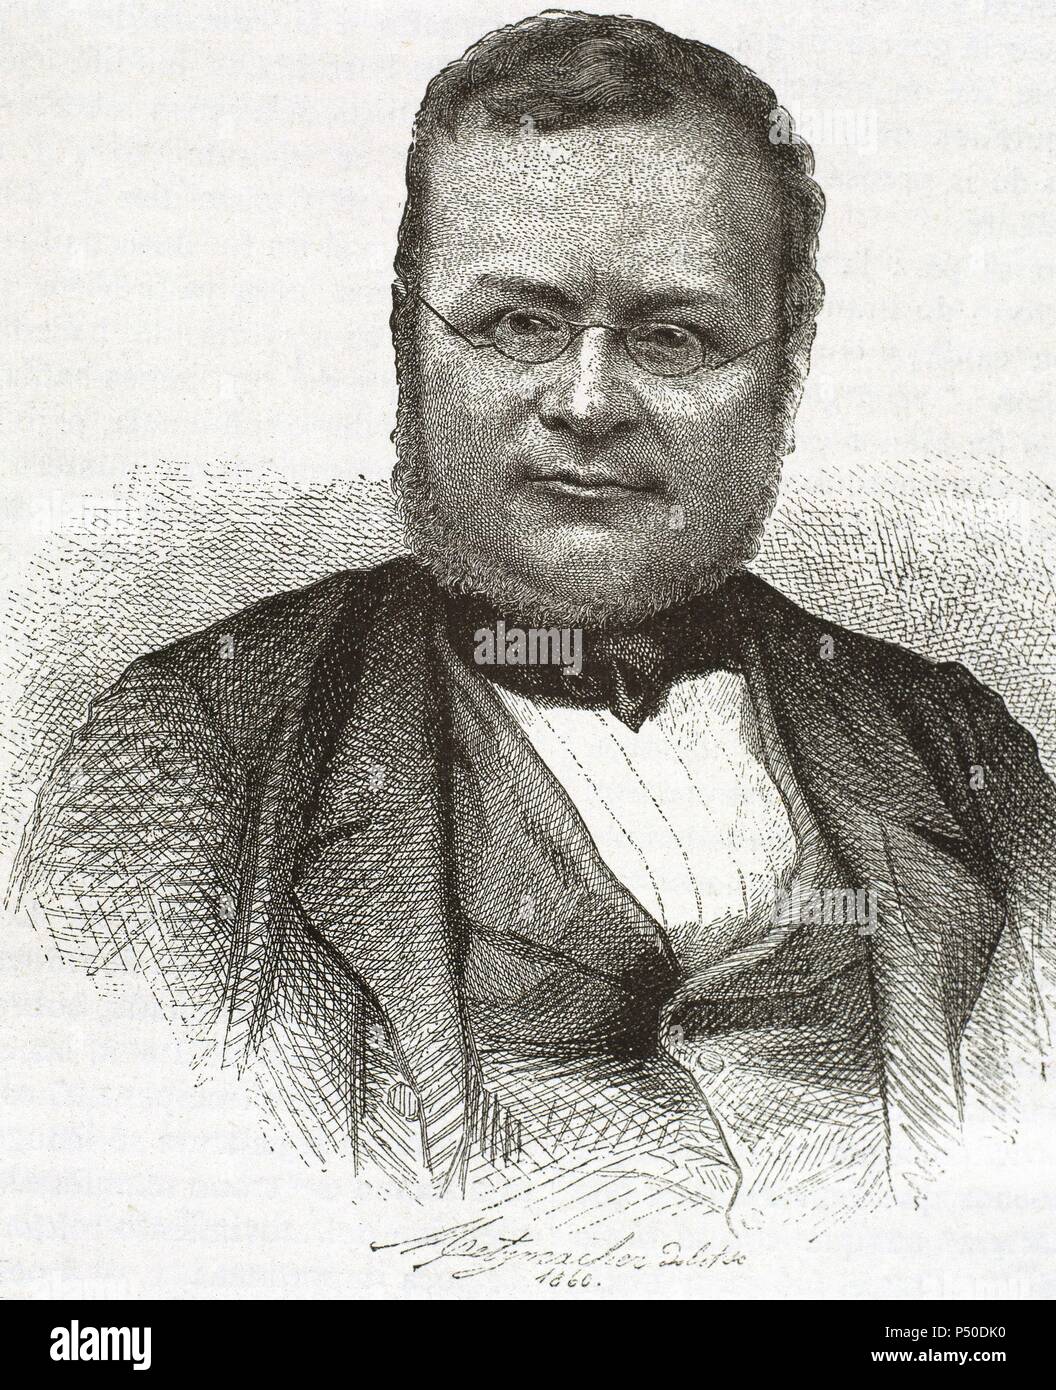 CONDE DE CAVOUR (Camilo Benso) (1810-1861). Estadista italiano, uno de los artífices de la unificación italiana. Grabado S. XIX. Stock Photo